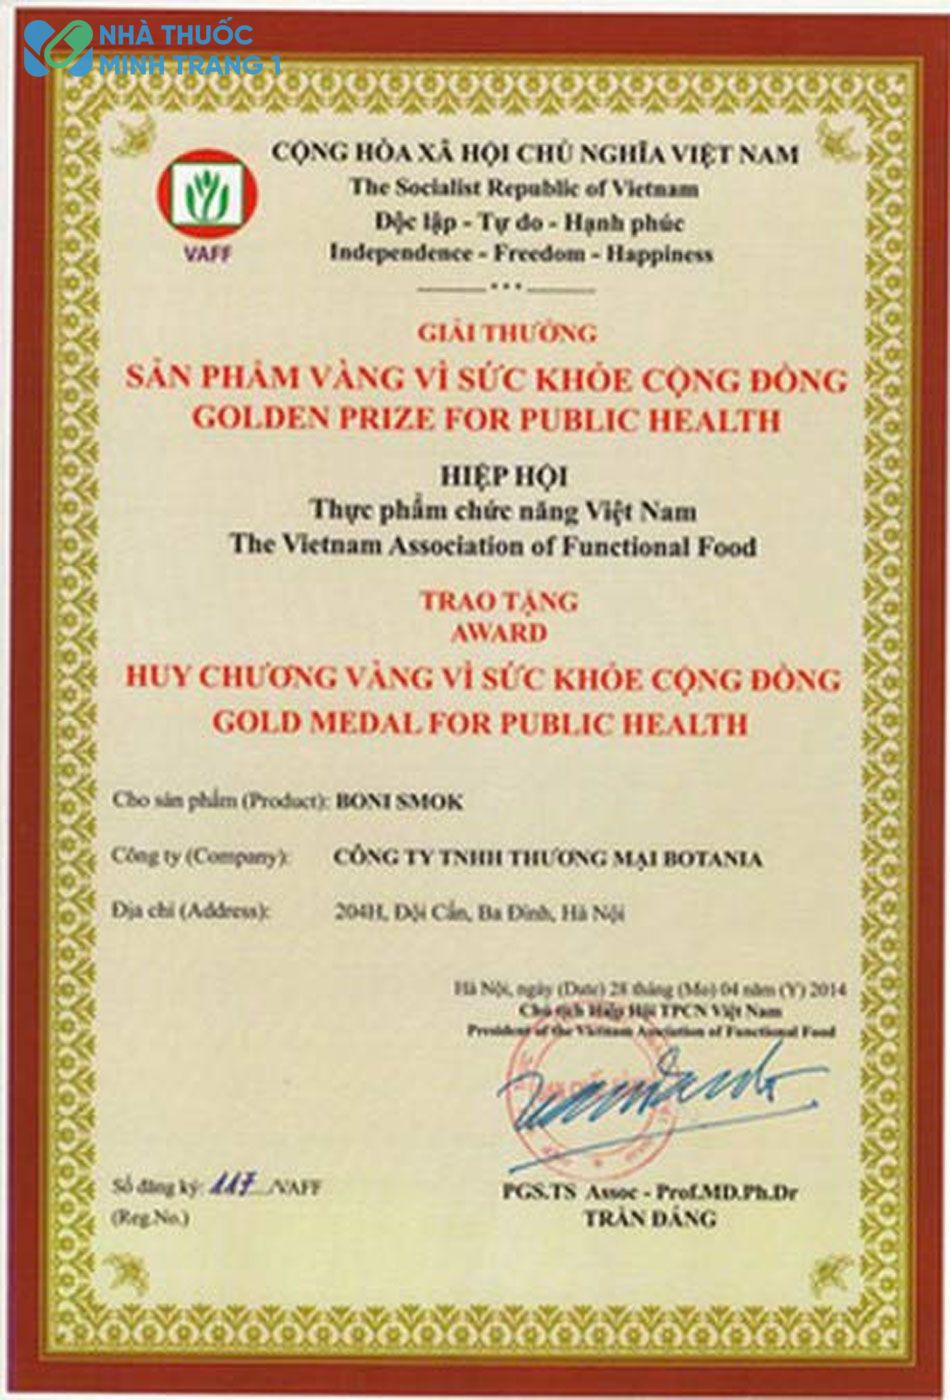 Boni-smok giành được giải thưởng vàng về sức khỏe cộng đồng